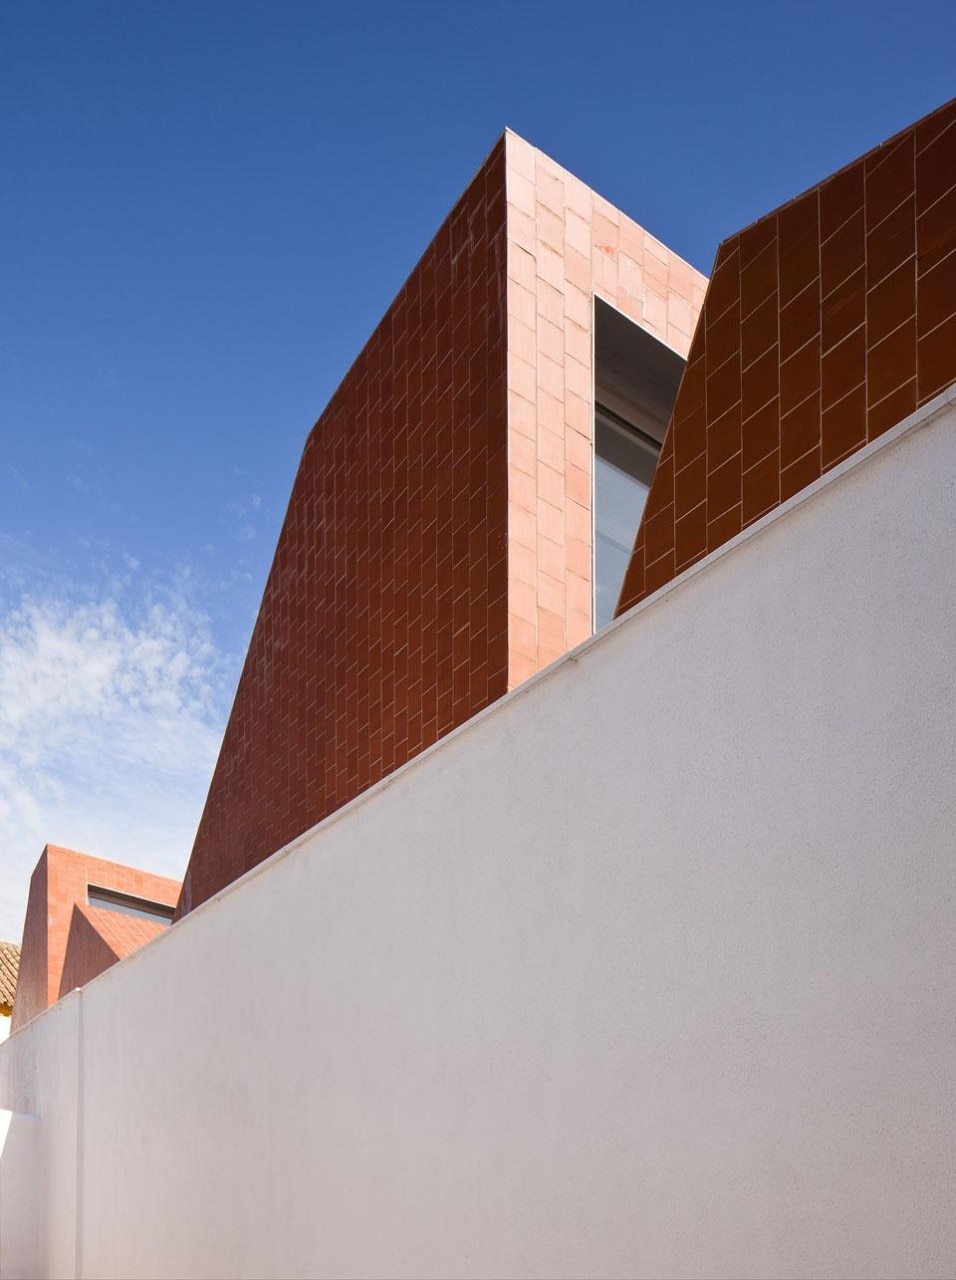 Escuela de Hostelería en Matadero, la Scuola alberghiera dell'ex mattatoio di Medina-Sidonia, dello studio Sol 89 (María González García e Juanjo López de la Cruz), vincitore per la categoria Architettura